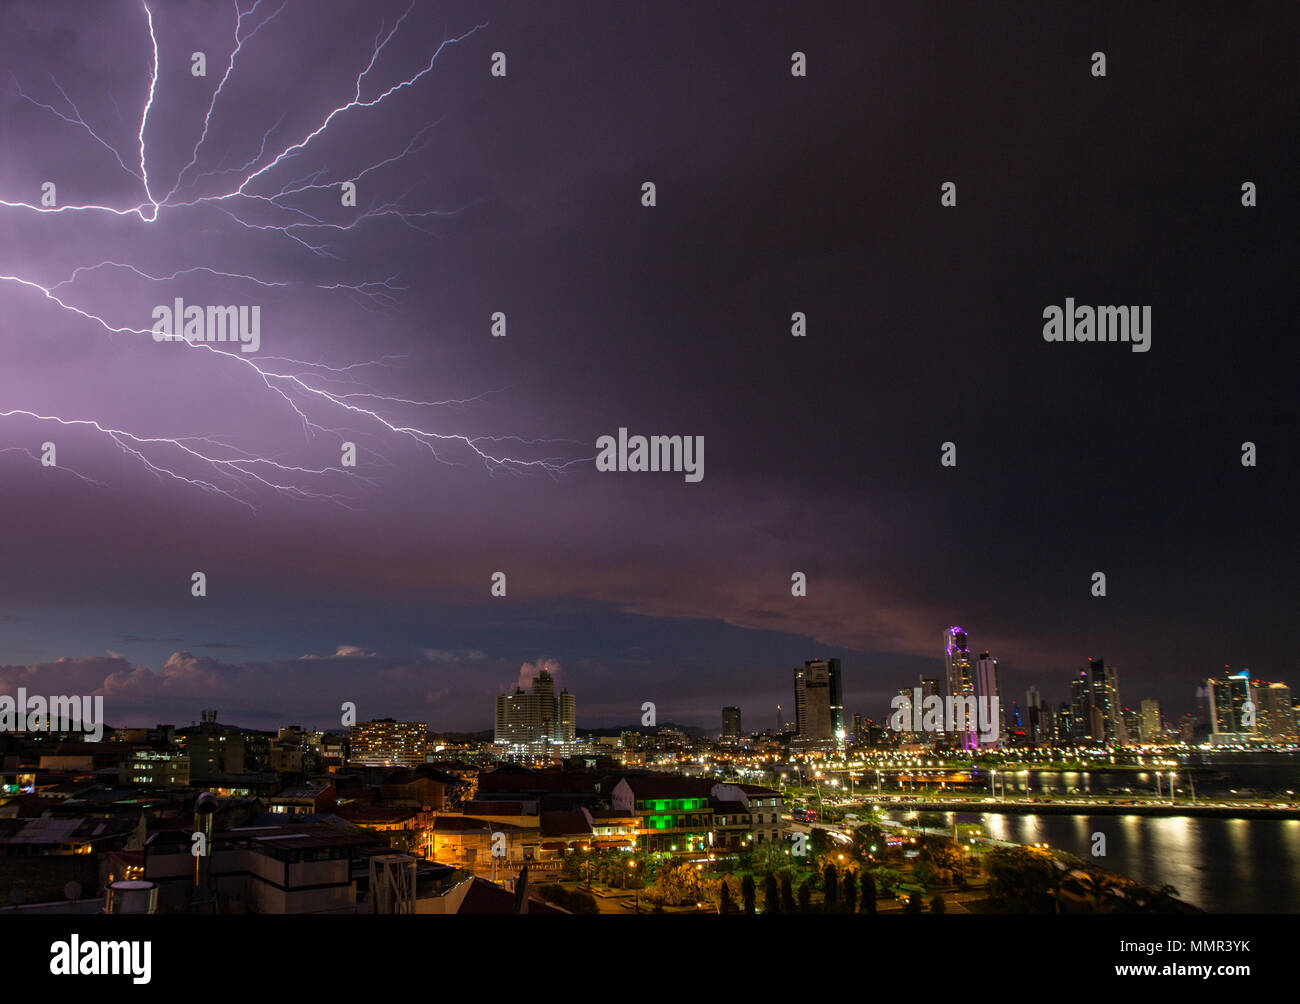 Panama City, Panama, Dec 4, 2017 - PPanama Stadt in der Nacht, in einem Sturm mit Blitz Streifen Himmel Stockfoto